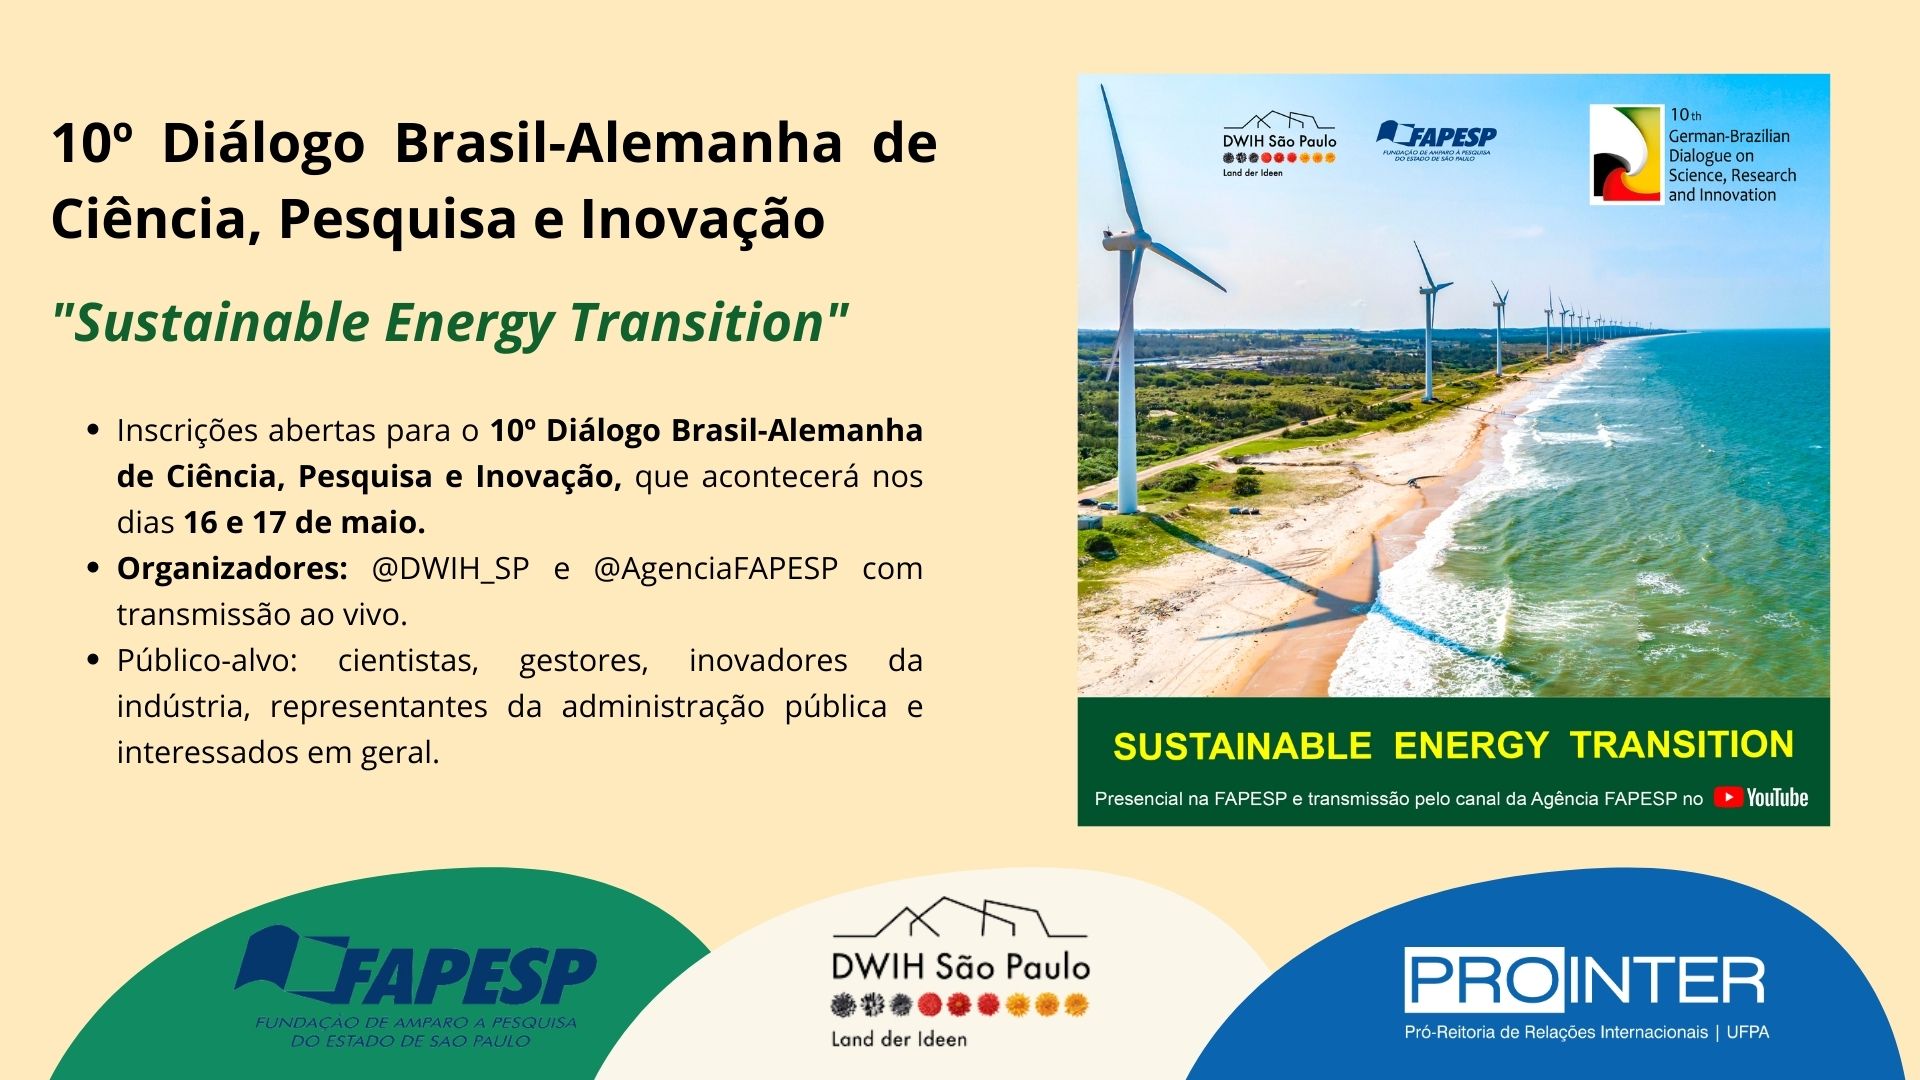 10º Diálogo Brasil-Alemanha de Ciência, Pesquisa e Inovação: “Sustainable Energy Transition”